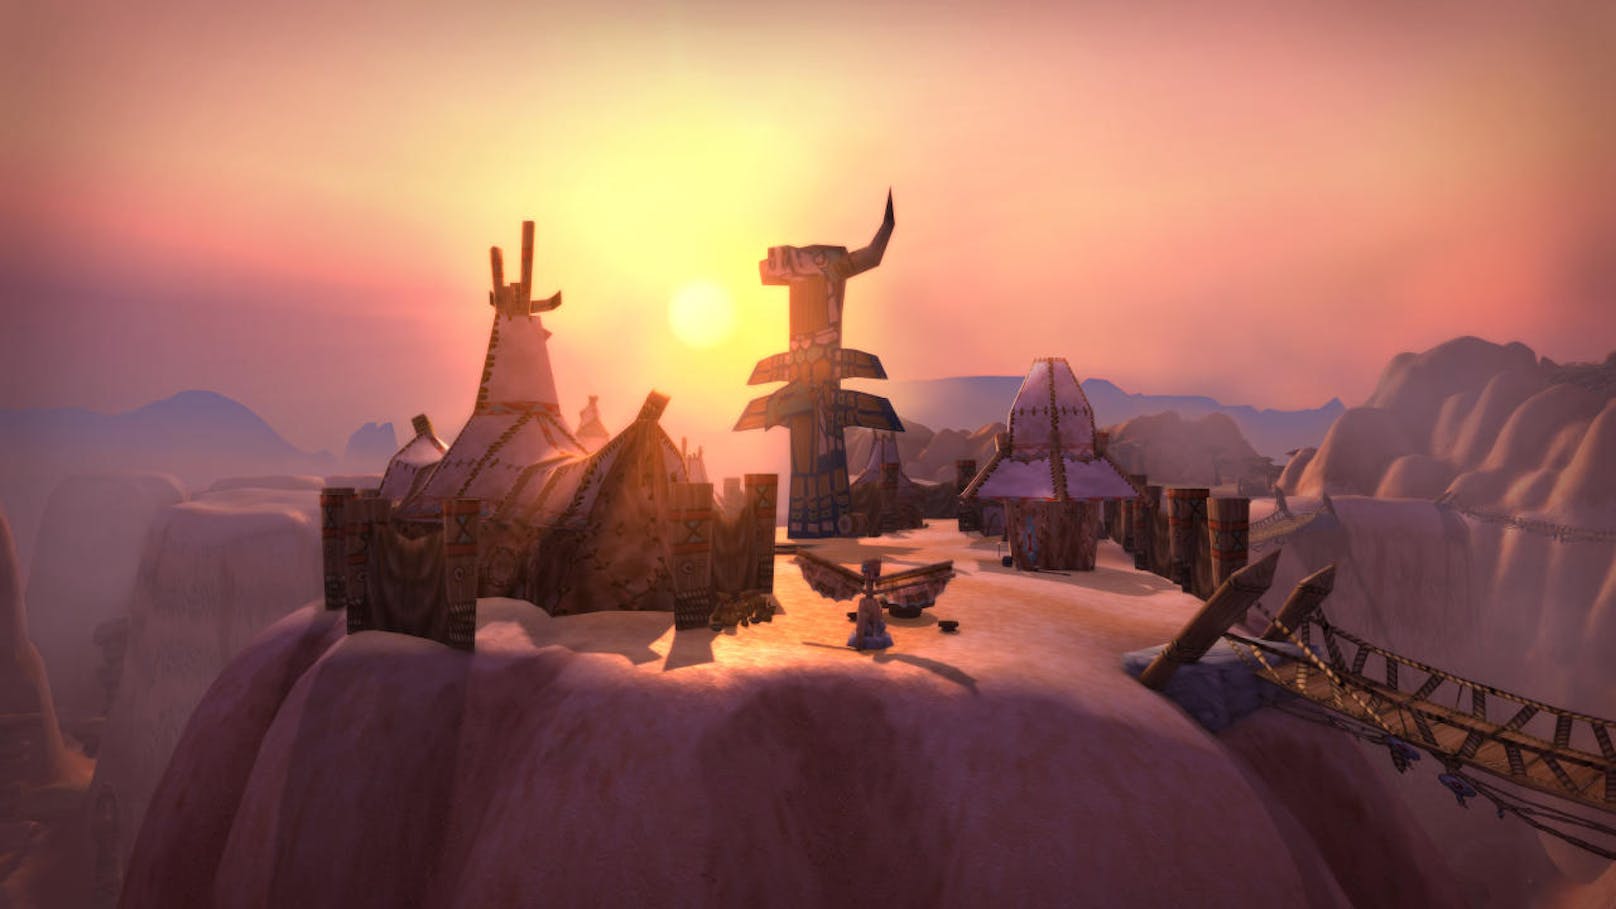 Über viele Jahre entwickelte sich eine "Parallelgesellschaft" unter World of Warcraft-Fans. Während sich der MMO-Gigant mit jeder Erweiterung stärker veränderte, zog es eine Spielergruppe vor, auf von Fans betriebenen Servern alte Versionen der Fantasy-Welt Azeroth zu erkunden.